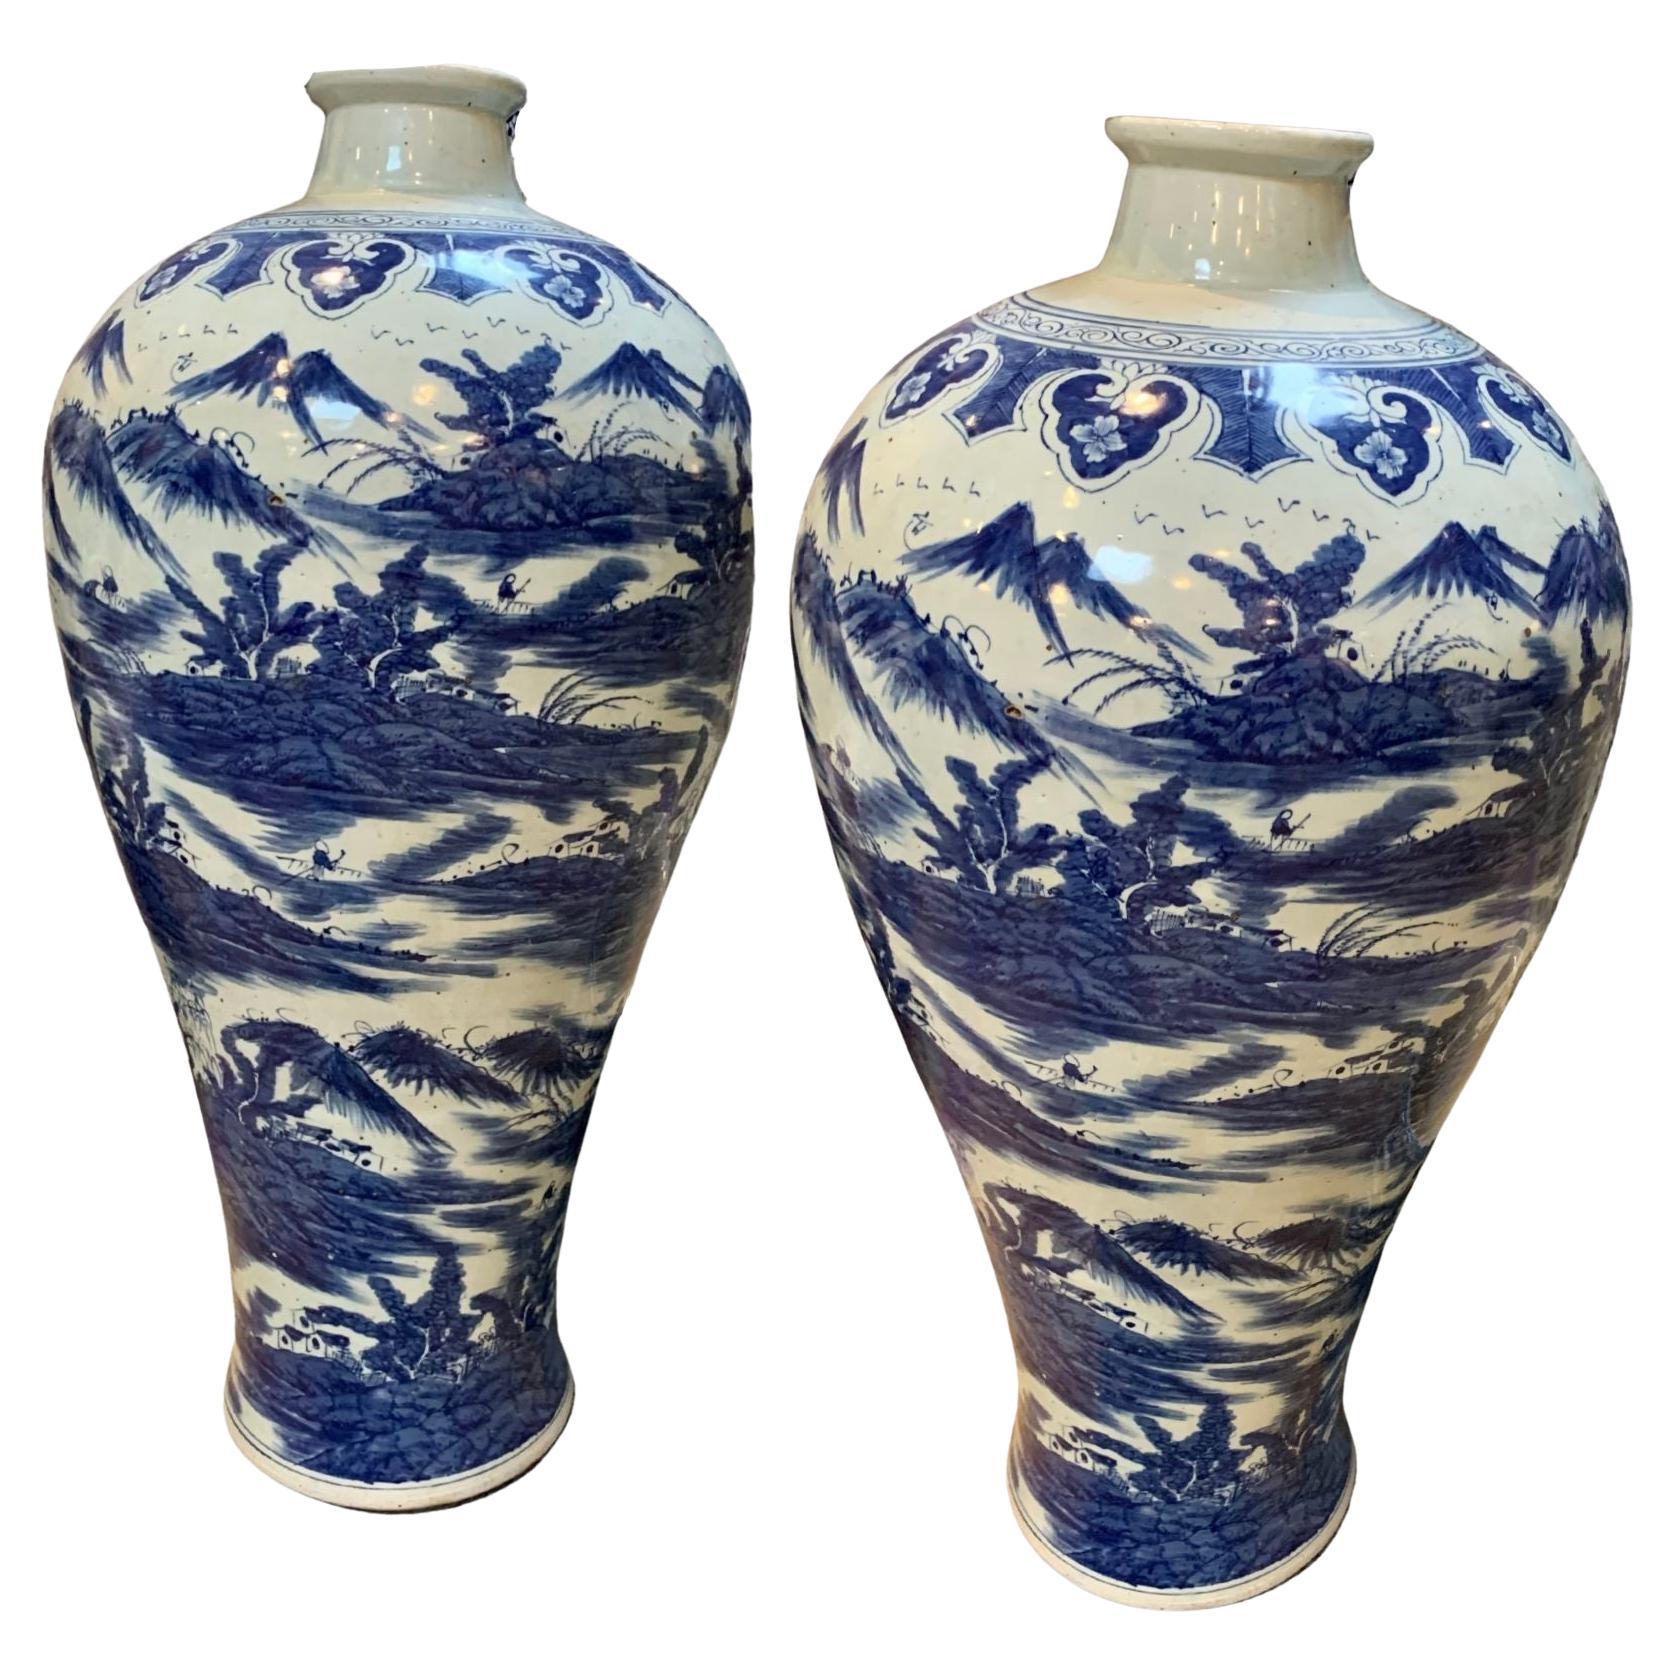 Large Chang Dynasty Porcelain Vases